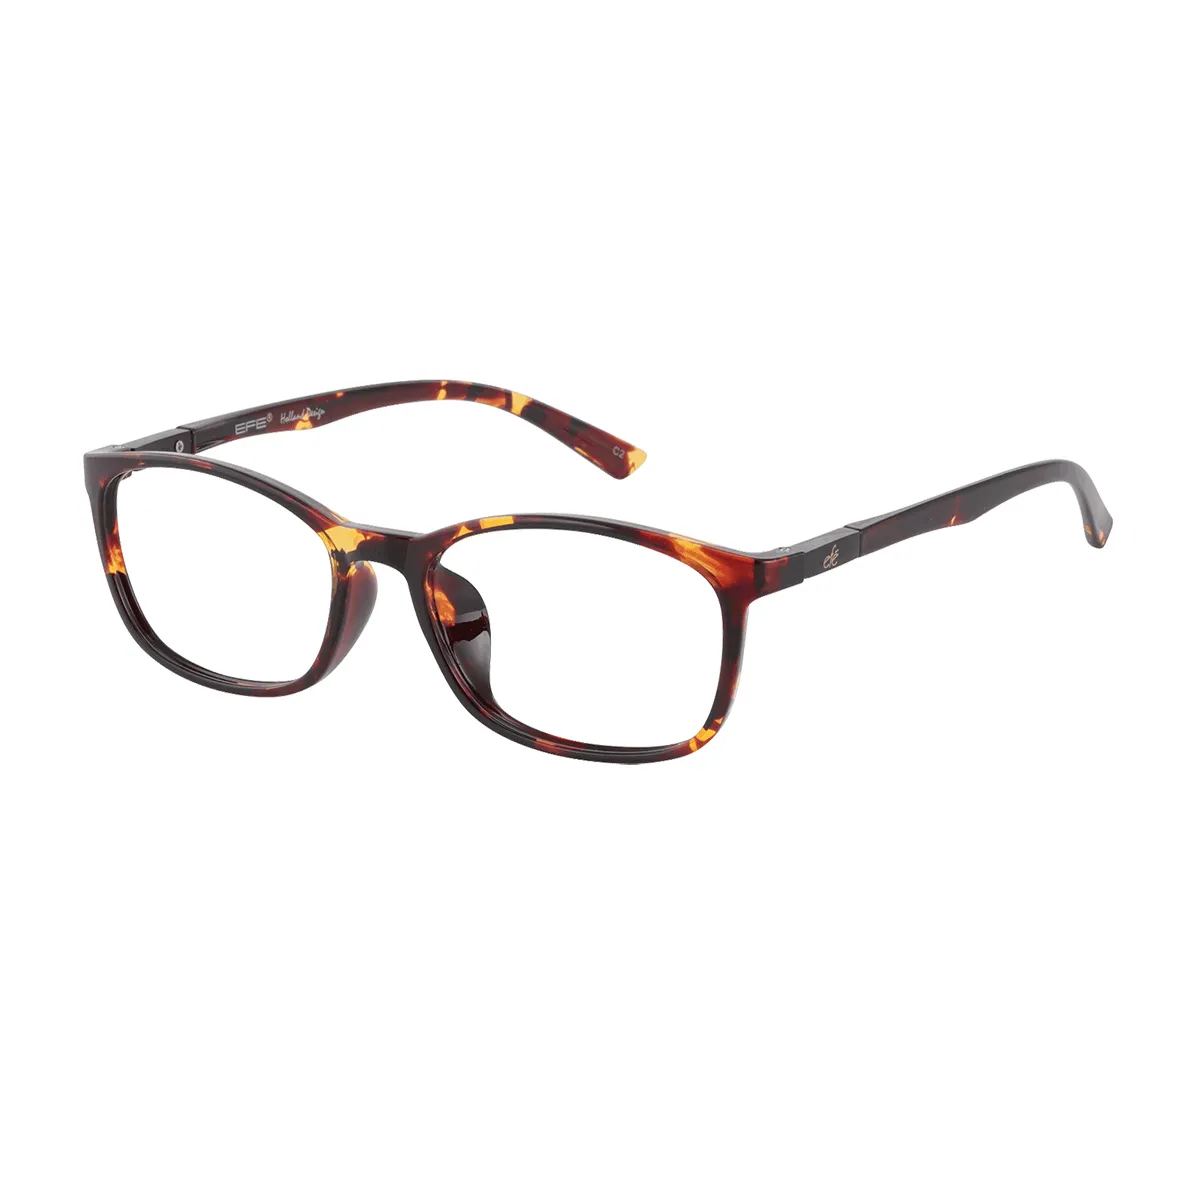 Bledsoe - Rectangle Tortoiseshell Glasses for Men & Women - EFE